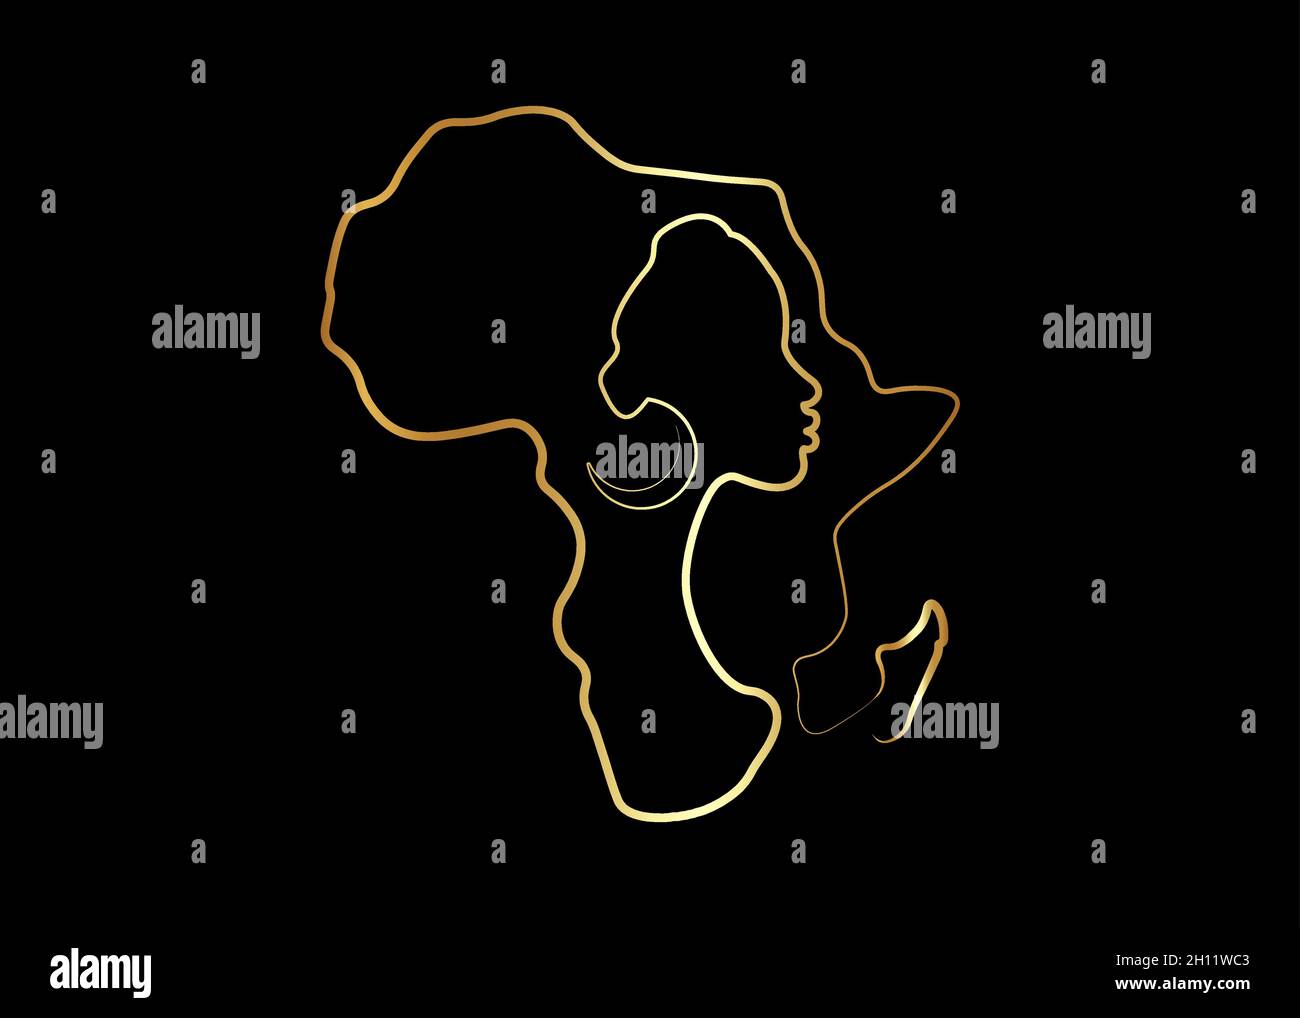 Femme africaine noire dans le style de l'art de ligne d'or, dessin de ligne continue de la femme africaine et carte du continent africain.Logo d'icône de dessin au trait doré vectoriel isolé Illustration de Vecteur